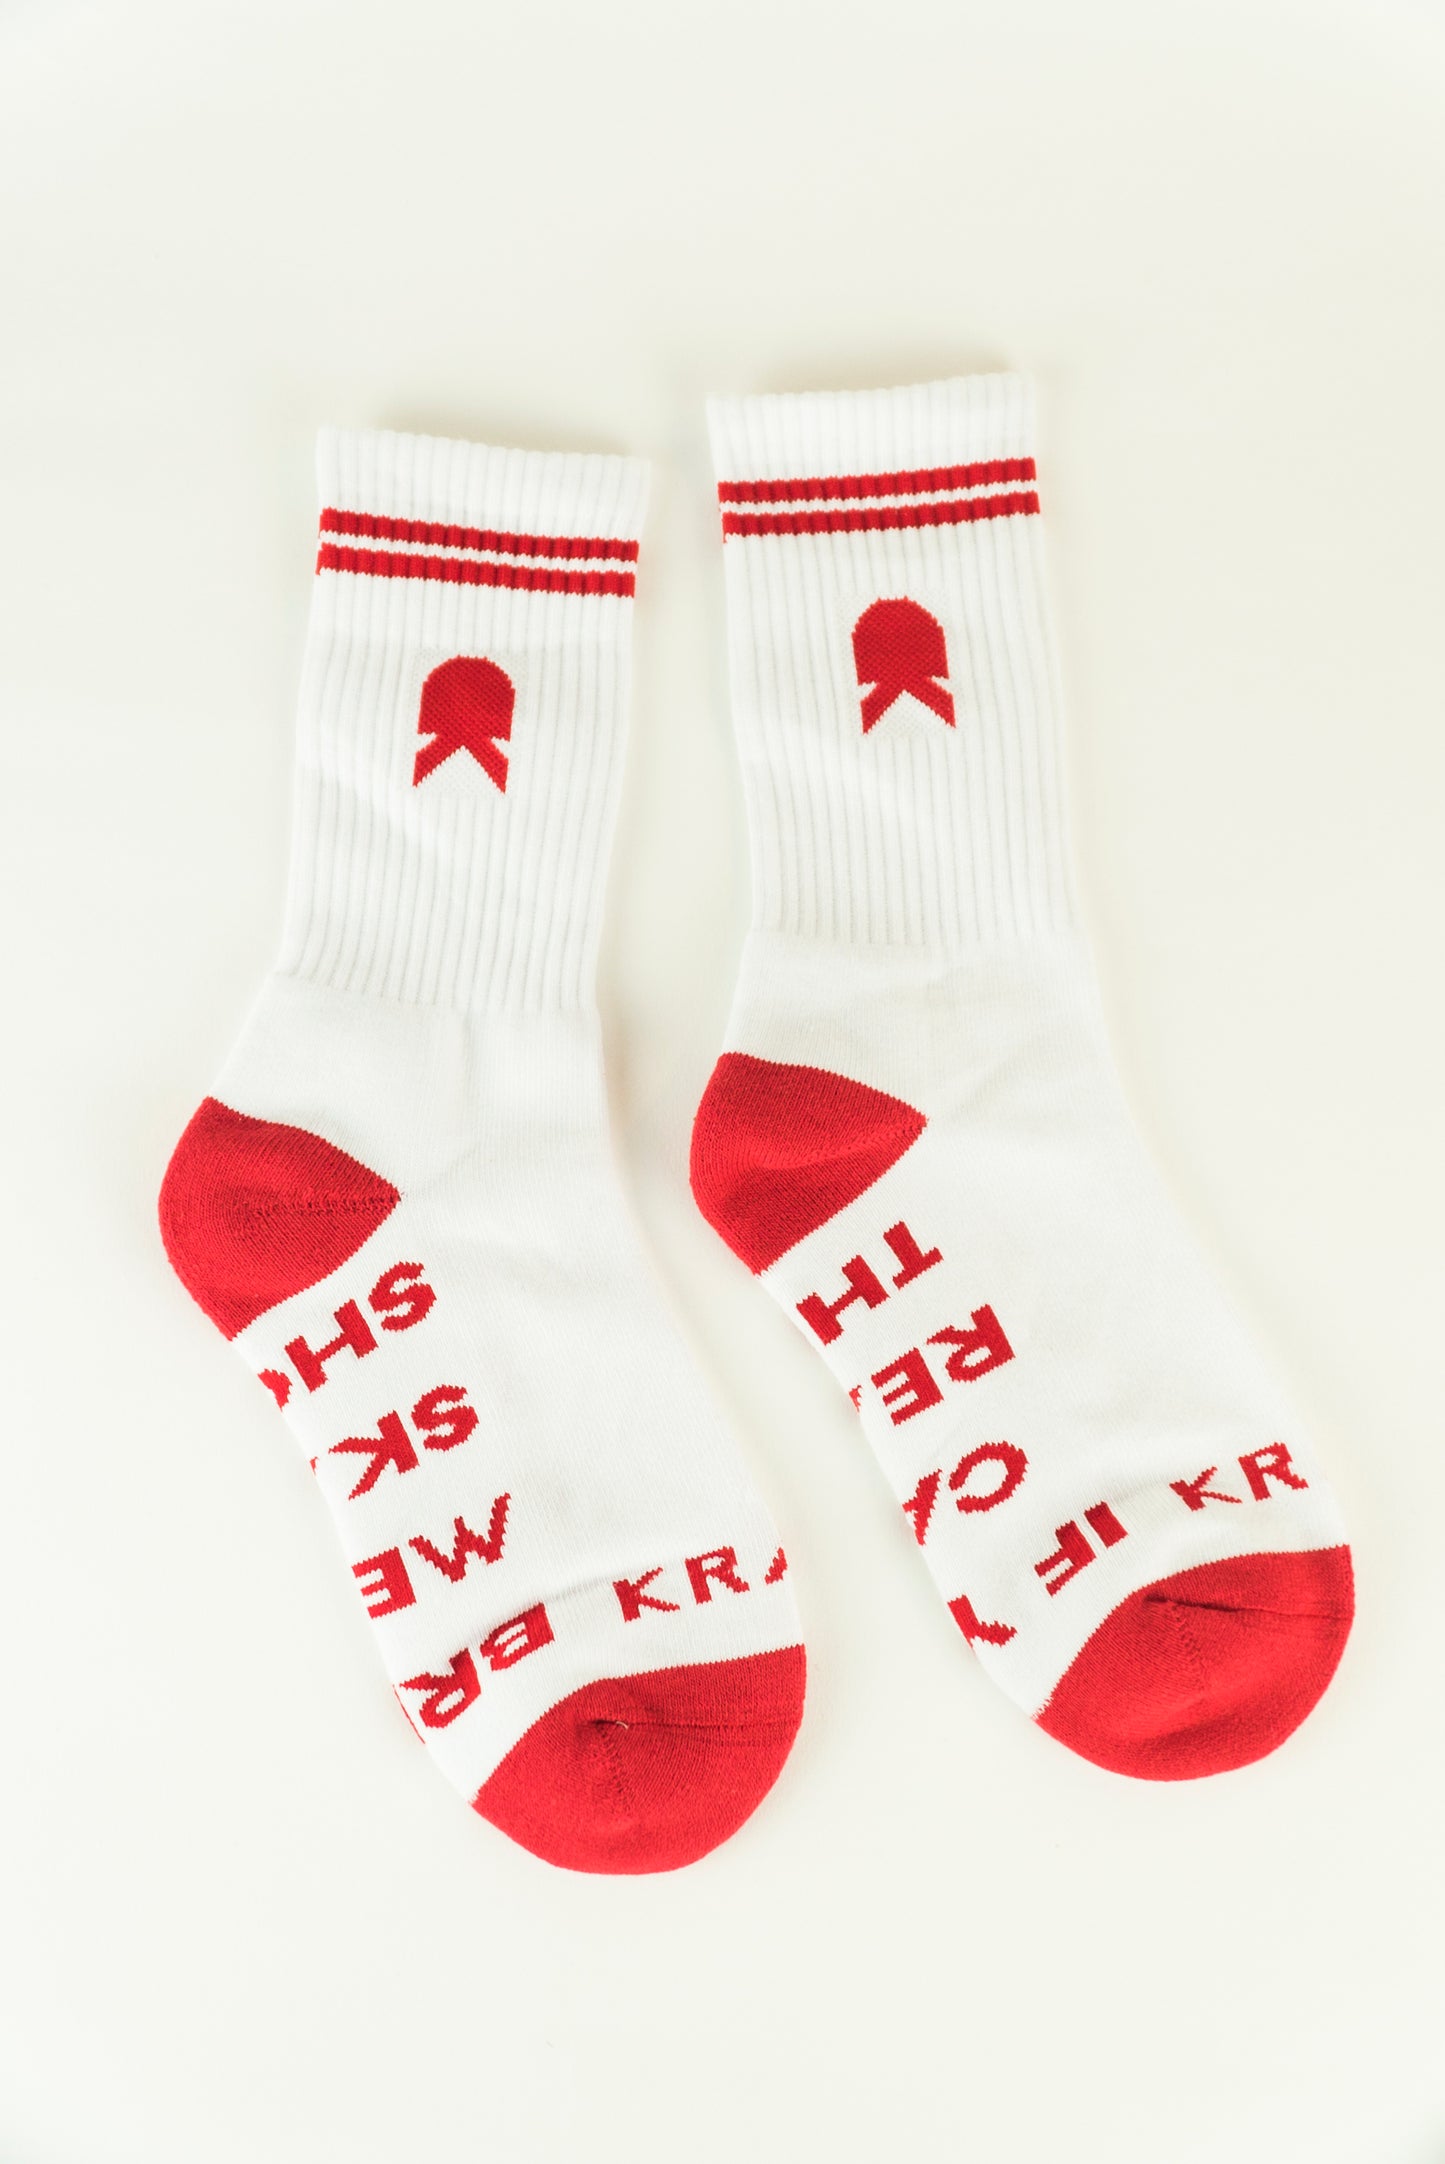 Krak • socks white & red